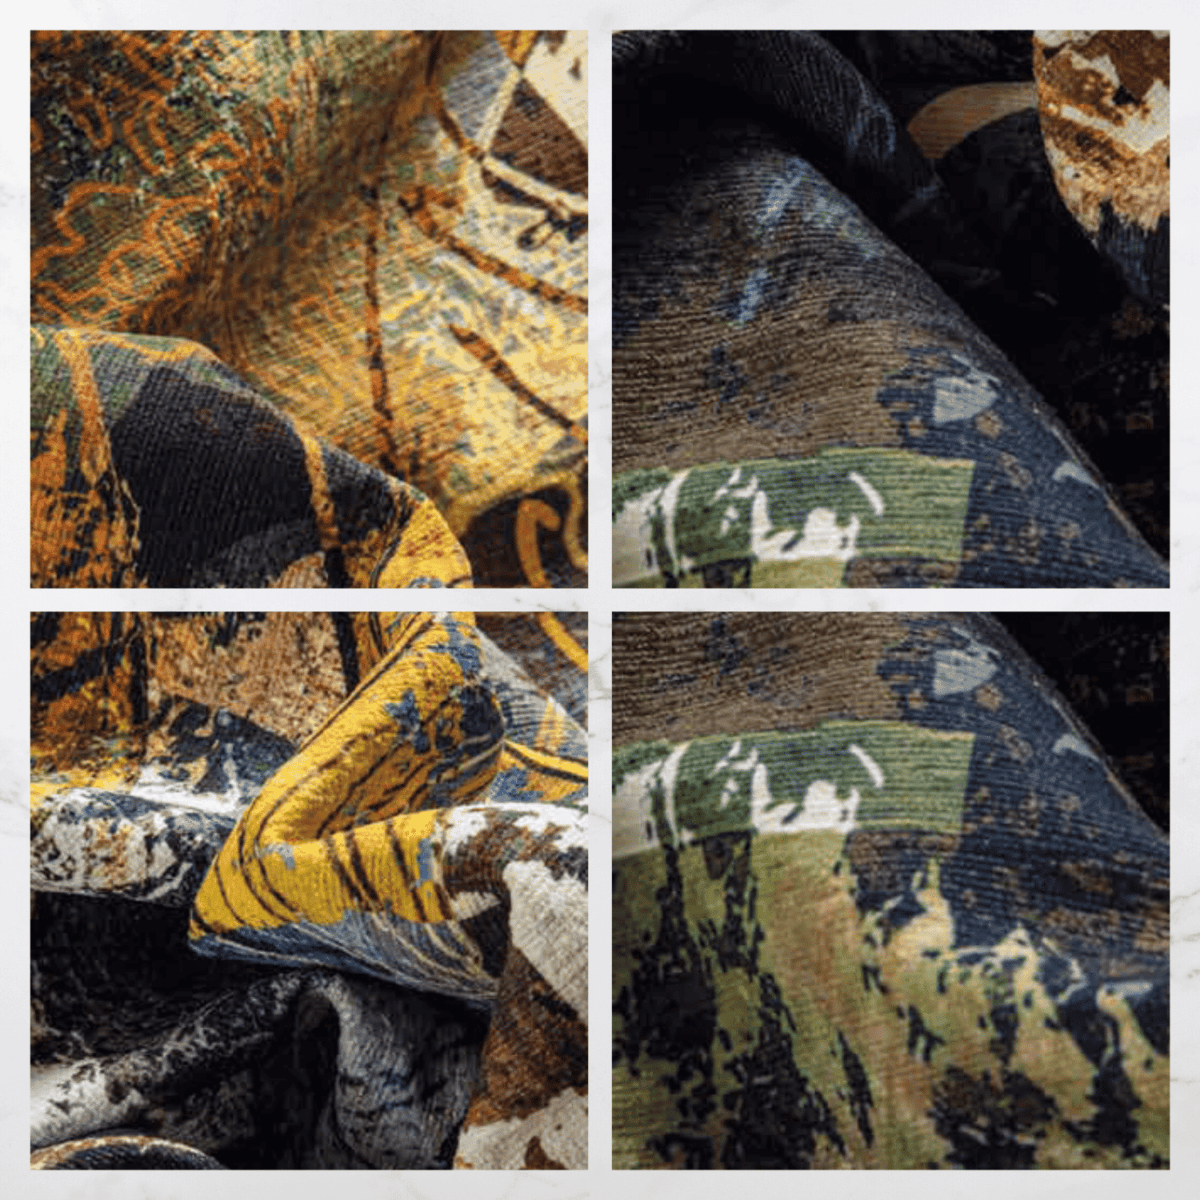 incisione-cielo-tappeto-arredo-emozioni-artista-fiorato-rame-fiori-giganti-oro-multicolor-blu-moderno-dettagli